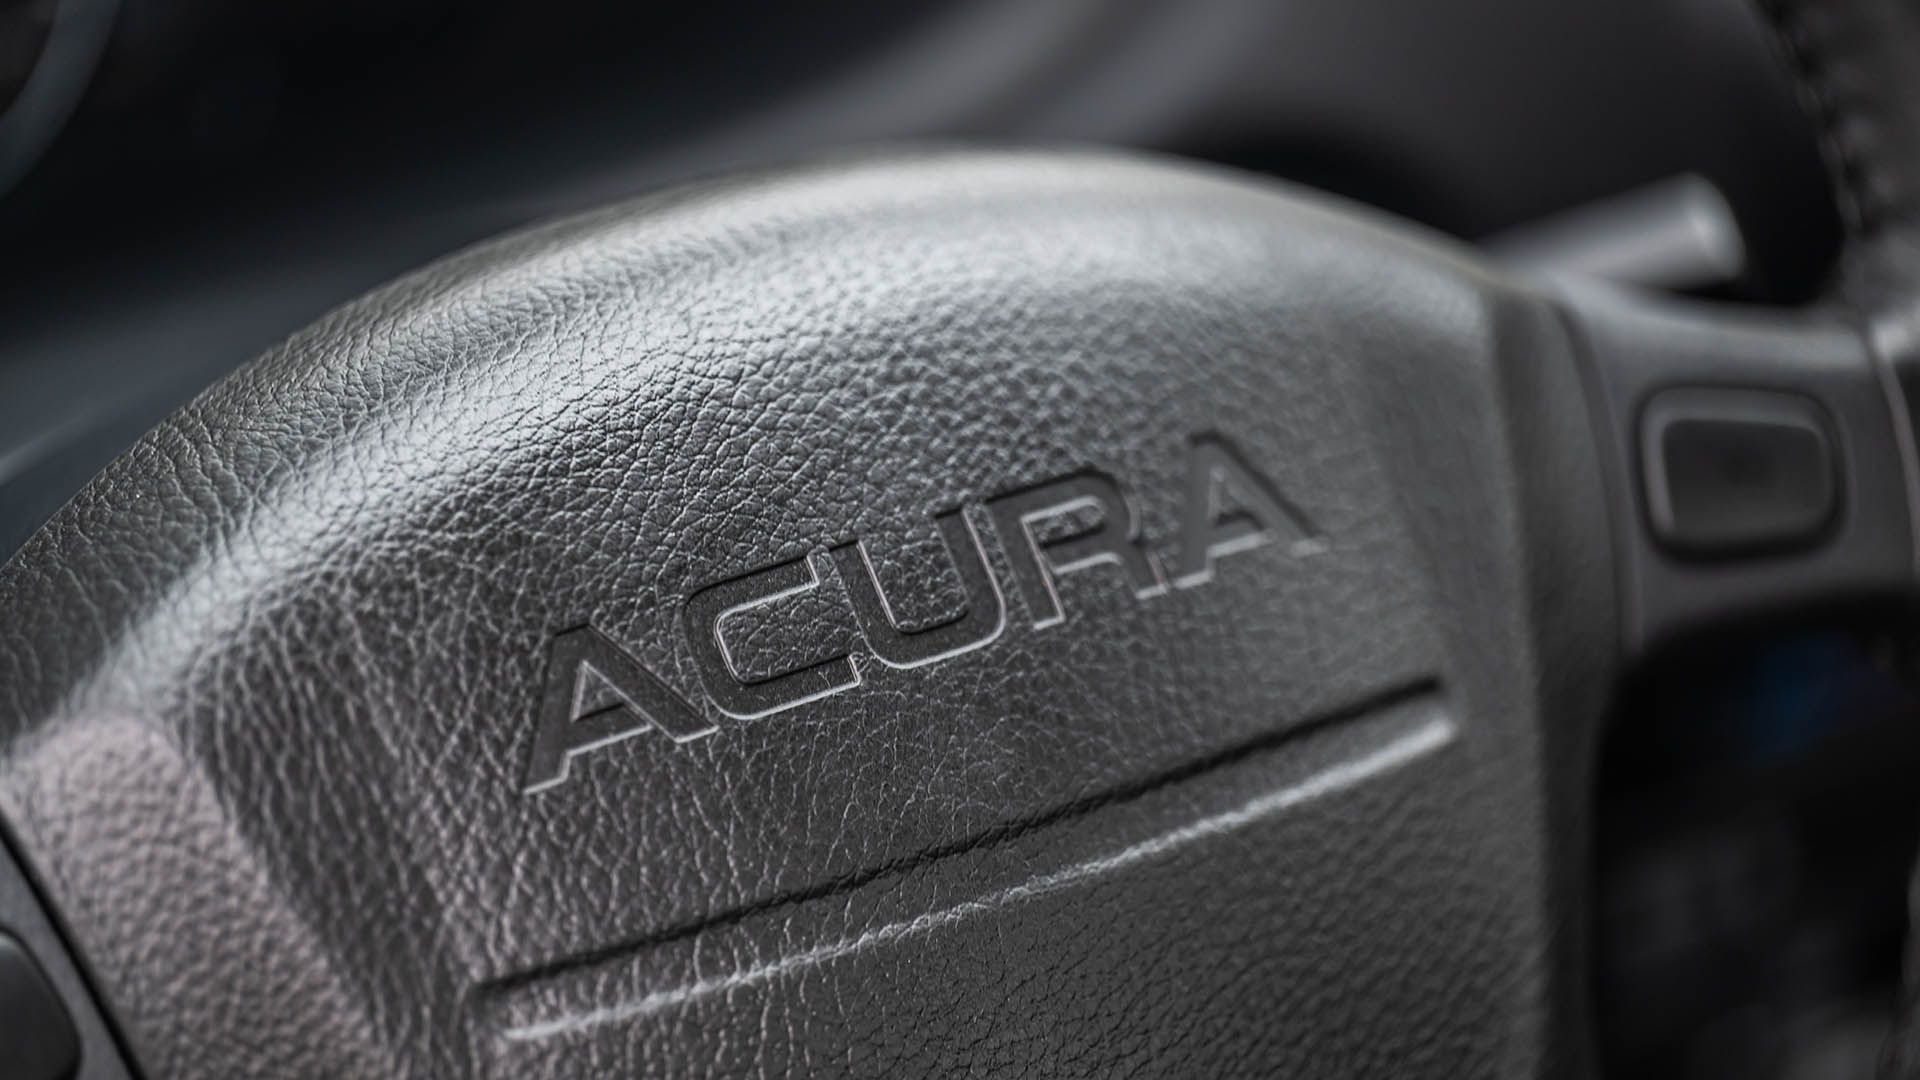 For Sale 1997 Acura Integra